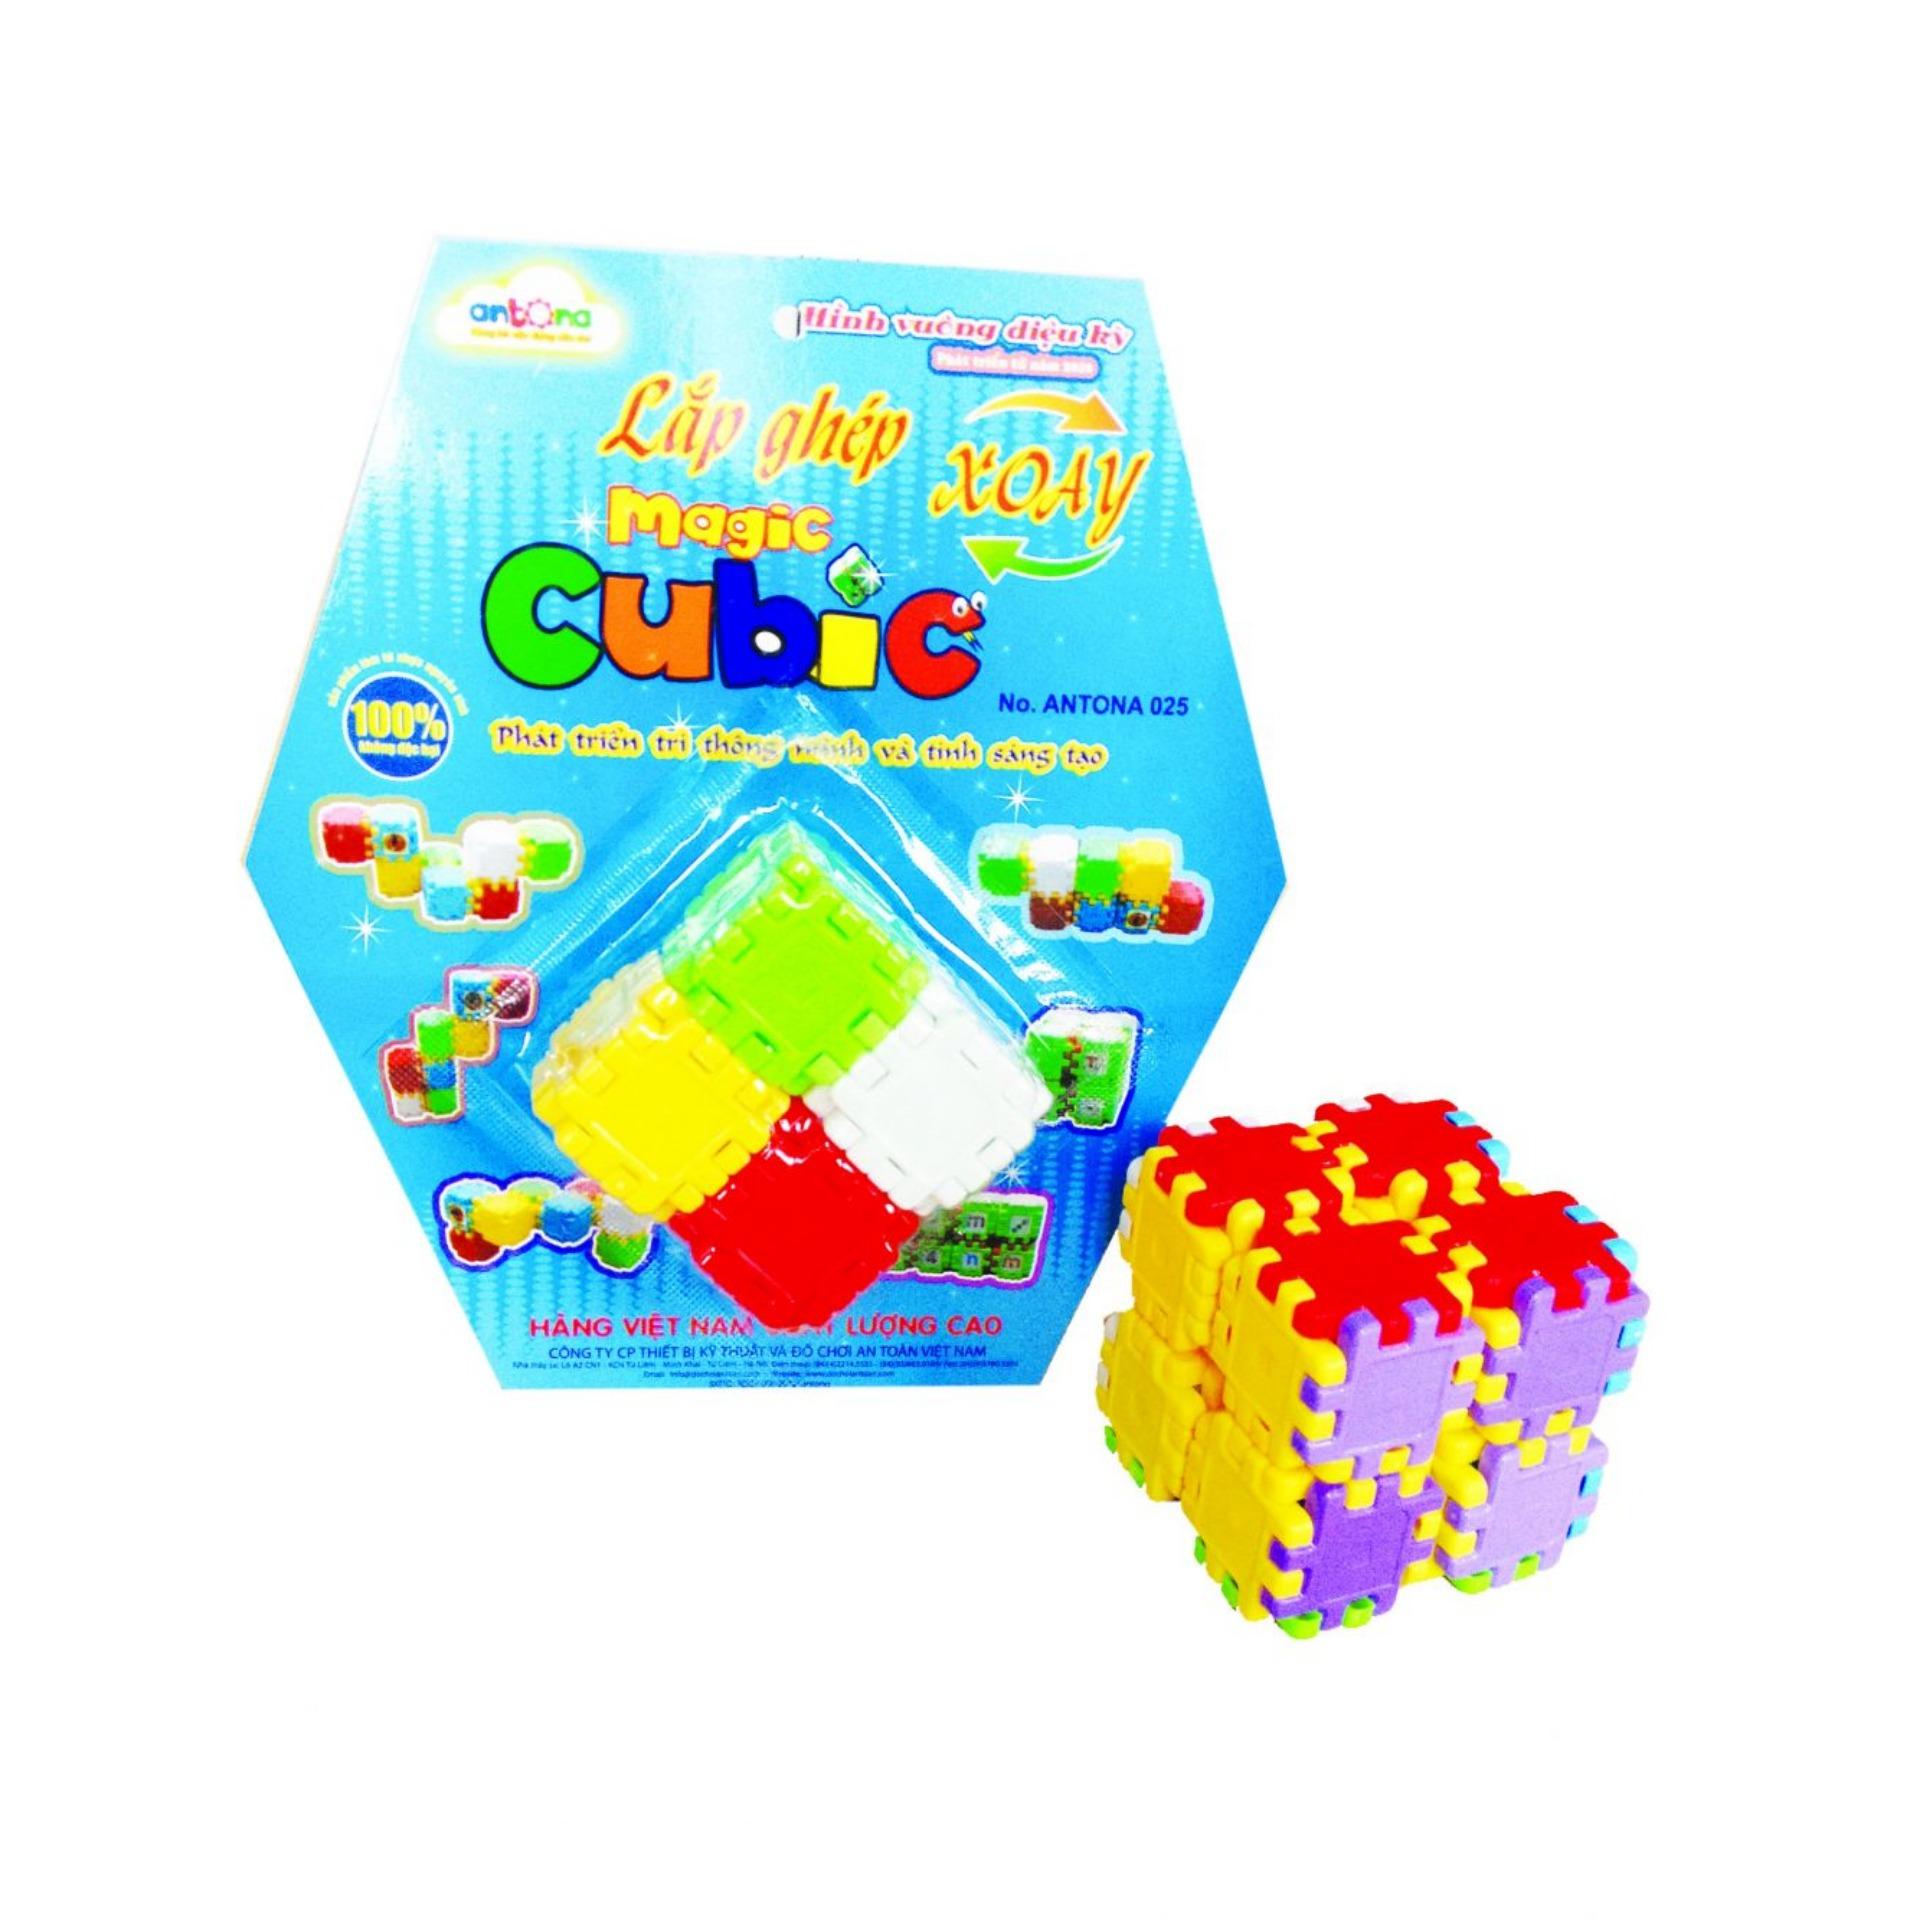 Bộ 3 đồ chơi Lắp ghép xoay - Magic Cubic